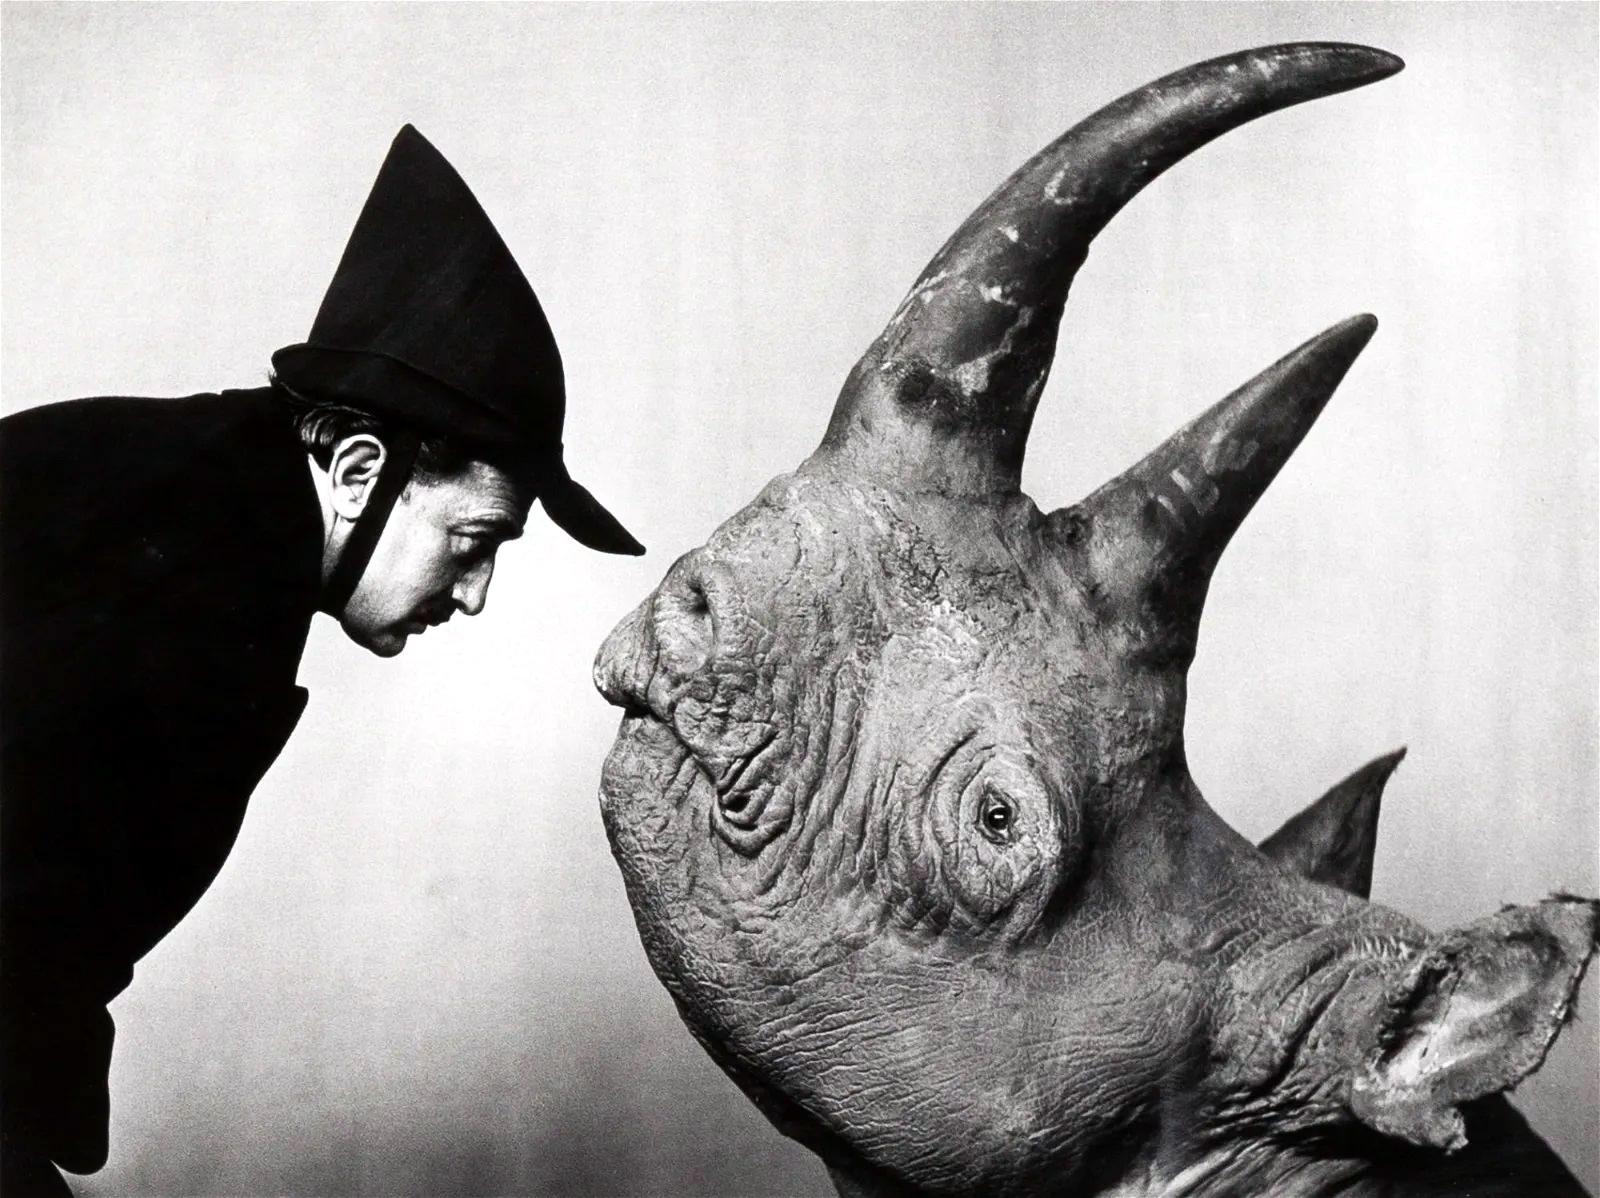 Künstler: Philippe Halsman (1906-1979)
Medium: Gelatinesilberdruck
Titel: Dalí mit Rhinozeros
Datum: 1956; 1981 als Teil des zehnteiligen Dali-Portfolios von Stephen Gersh und der Neikrug Press unter der Aufsicht von Halsmans Witwe Yvonne